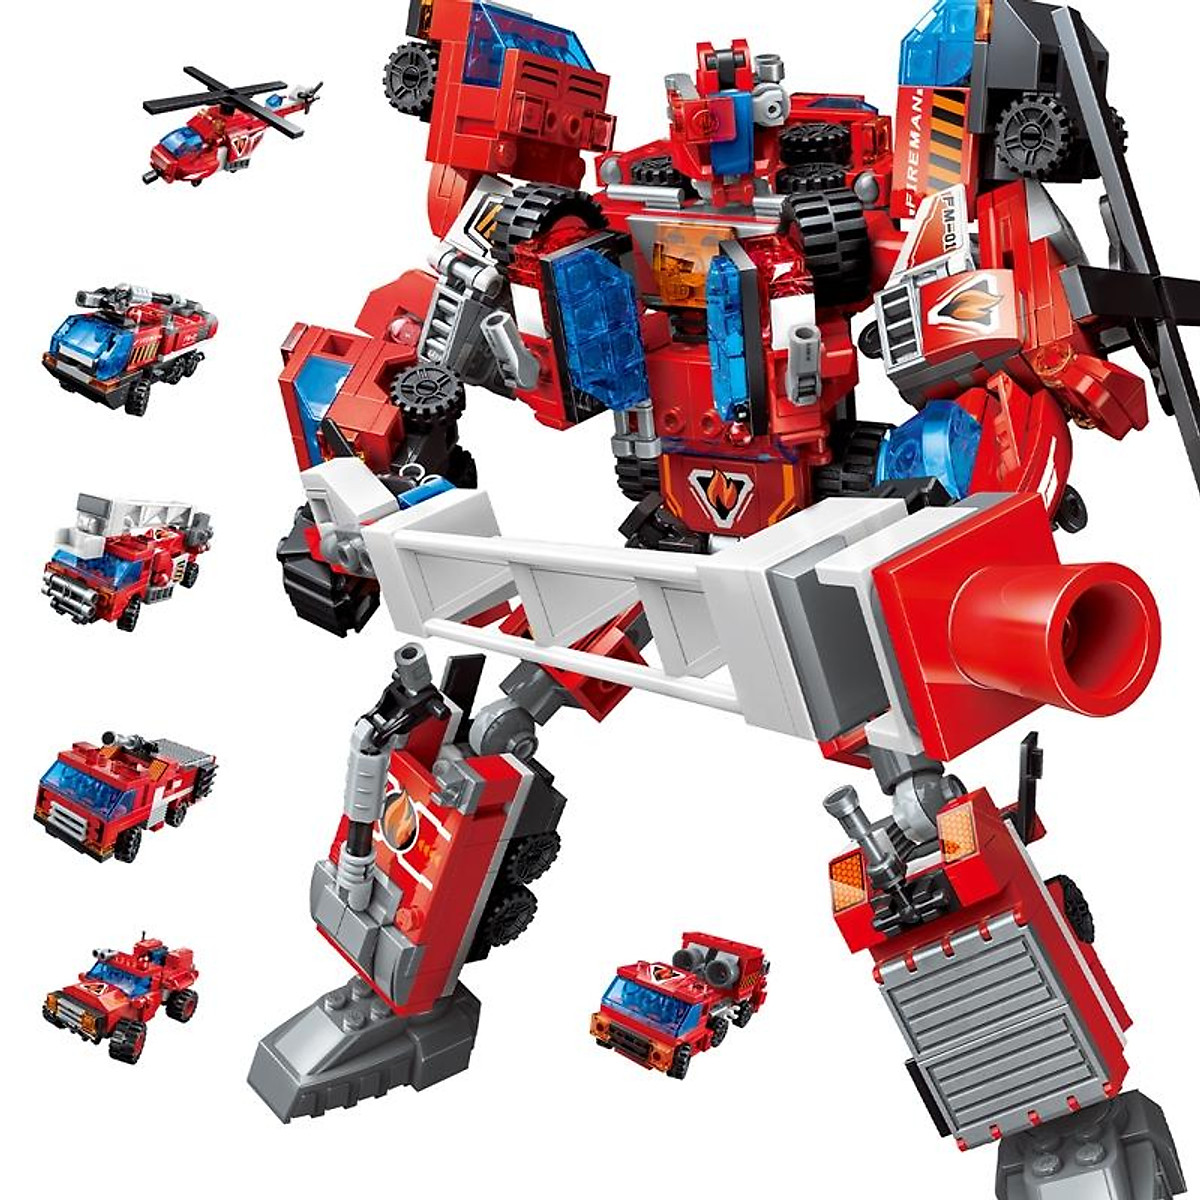  LEGO mô hình robot